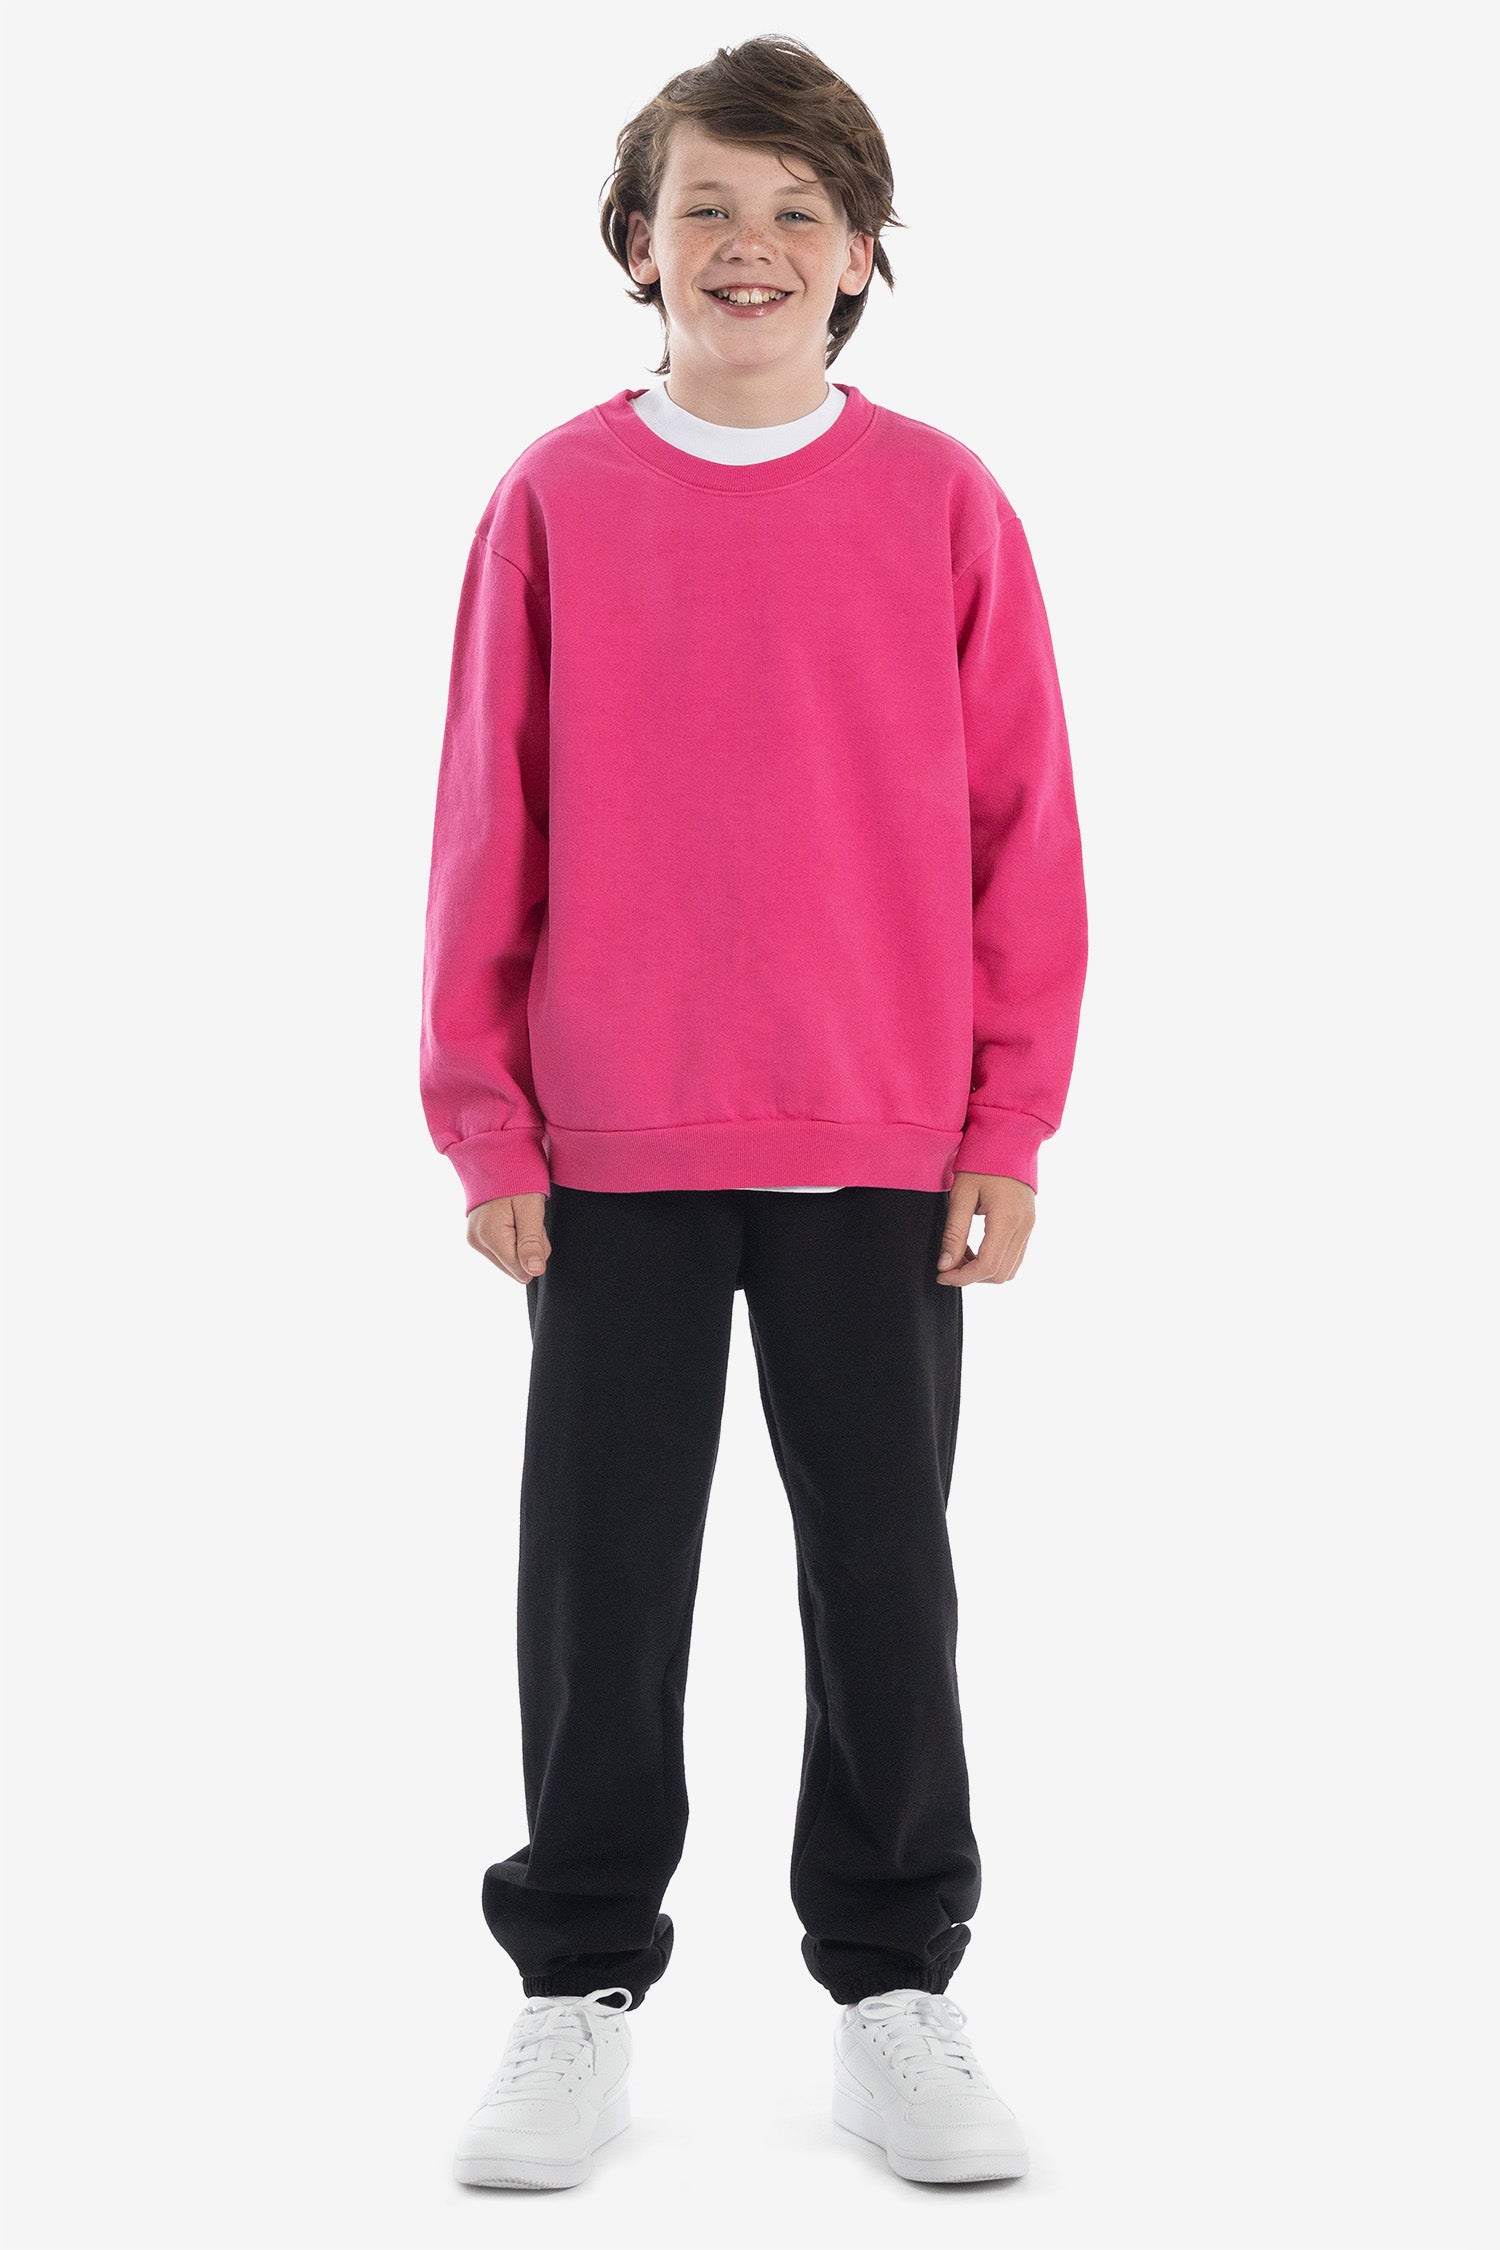 Garment Los Heavy Angeles Dye - Kids Fleece Sweatshirt Crew HF107GD – Apparel